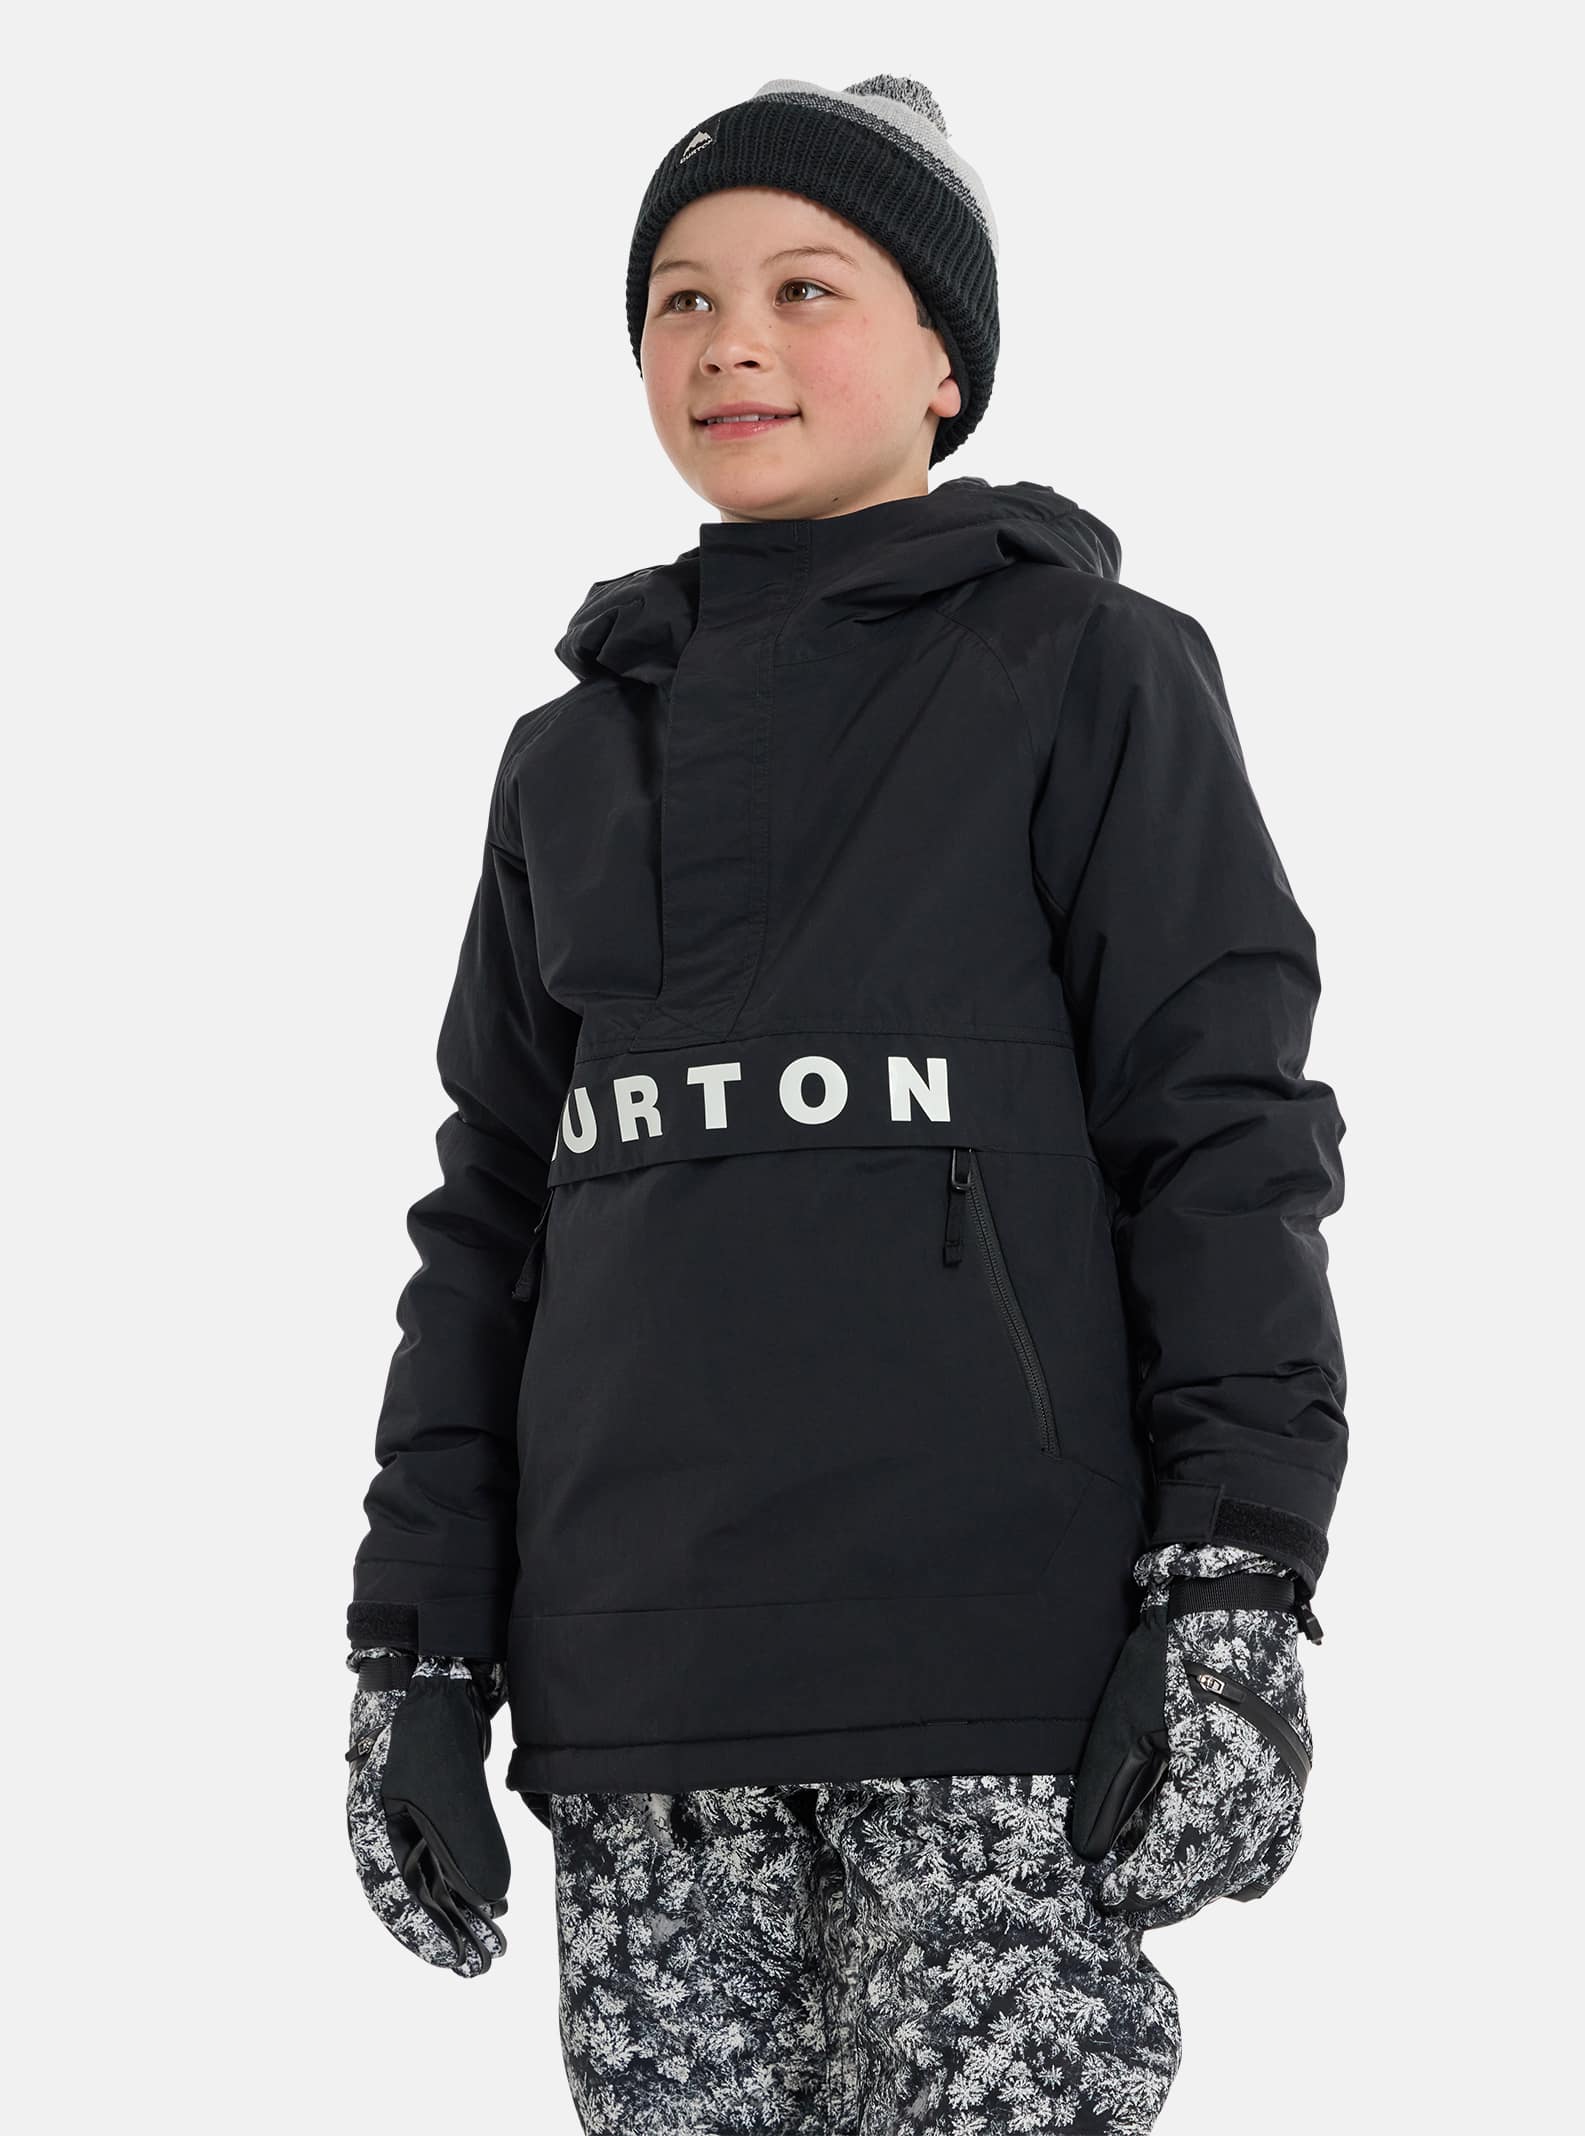 Vinterkläder för barn| Burton Snowboards SE